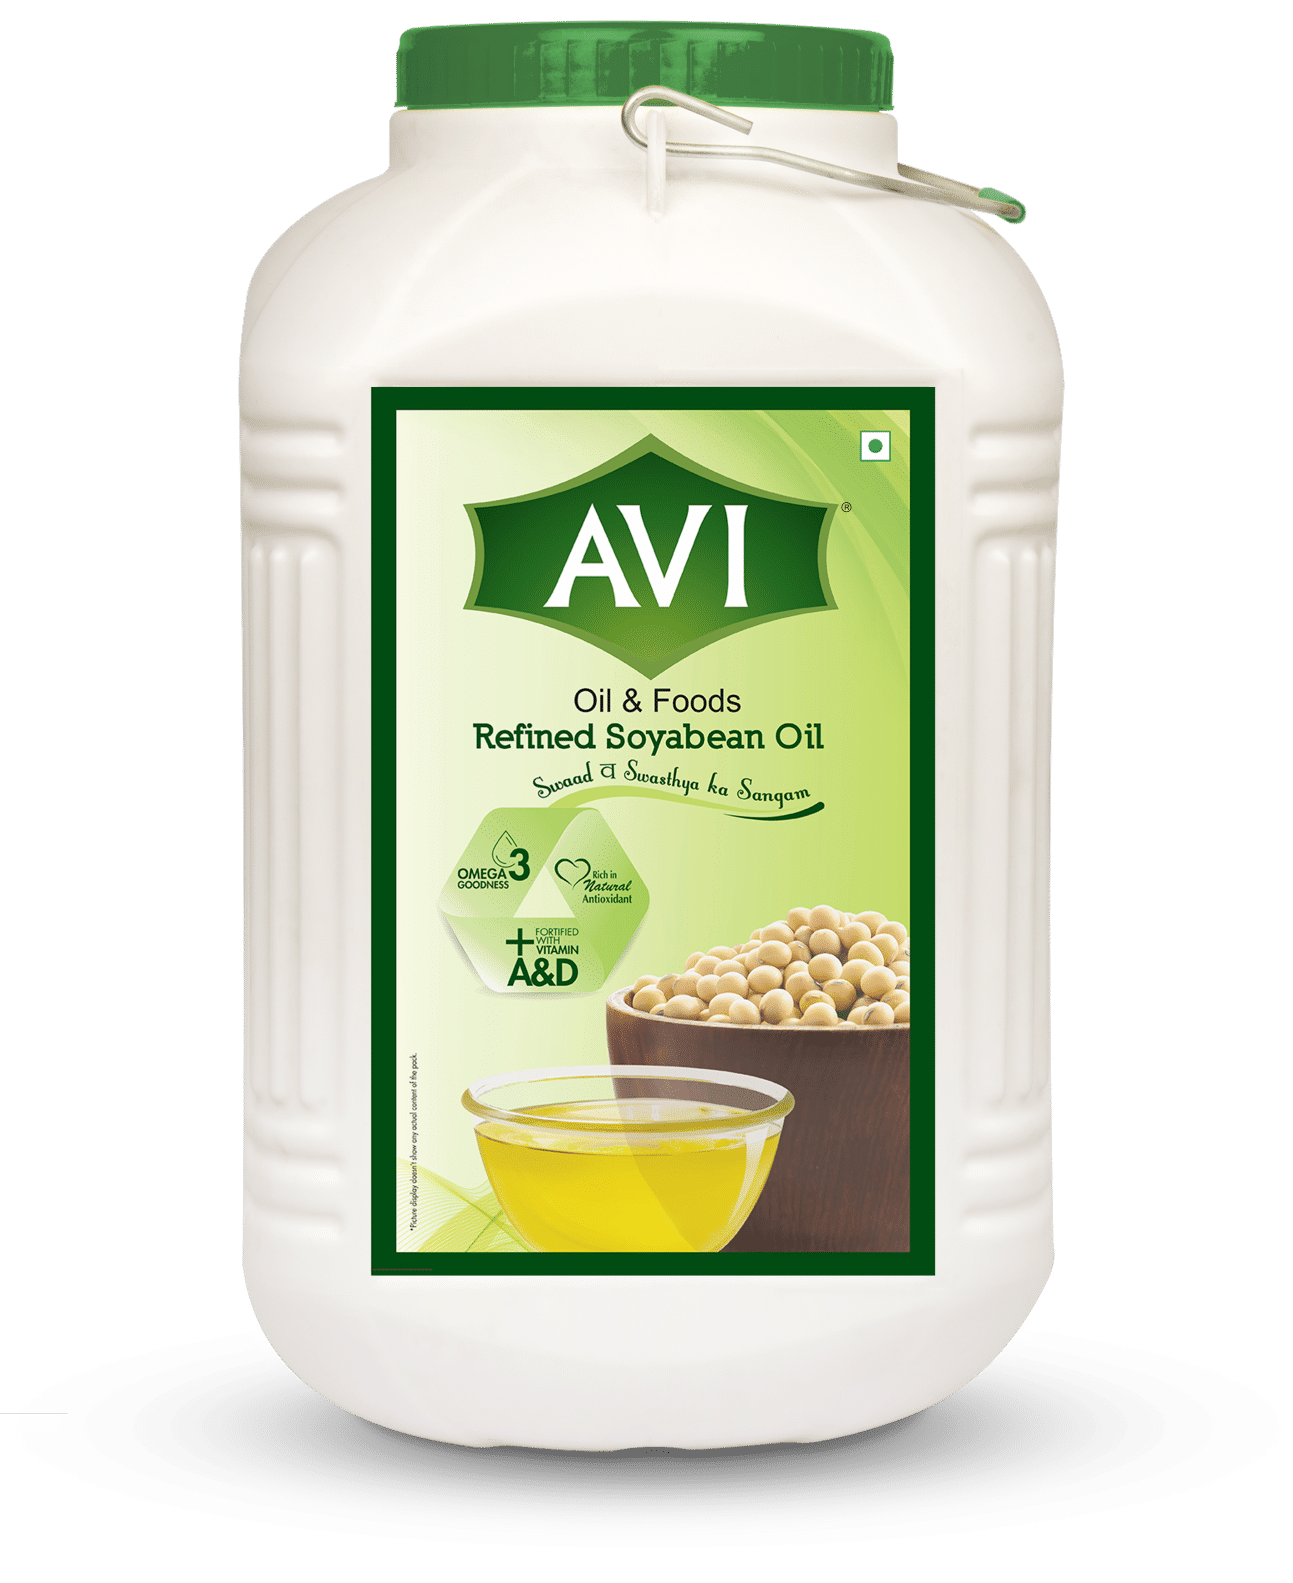 Avi Refined Soyabean Oil